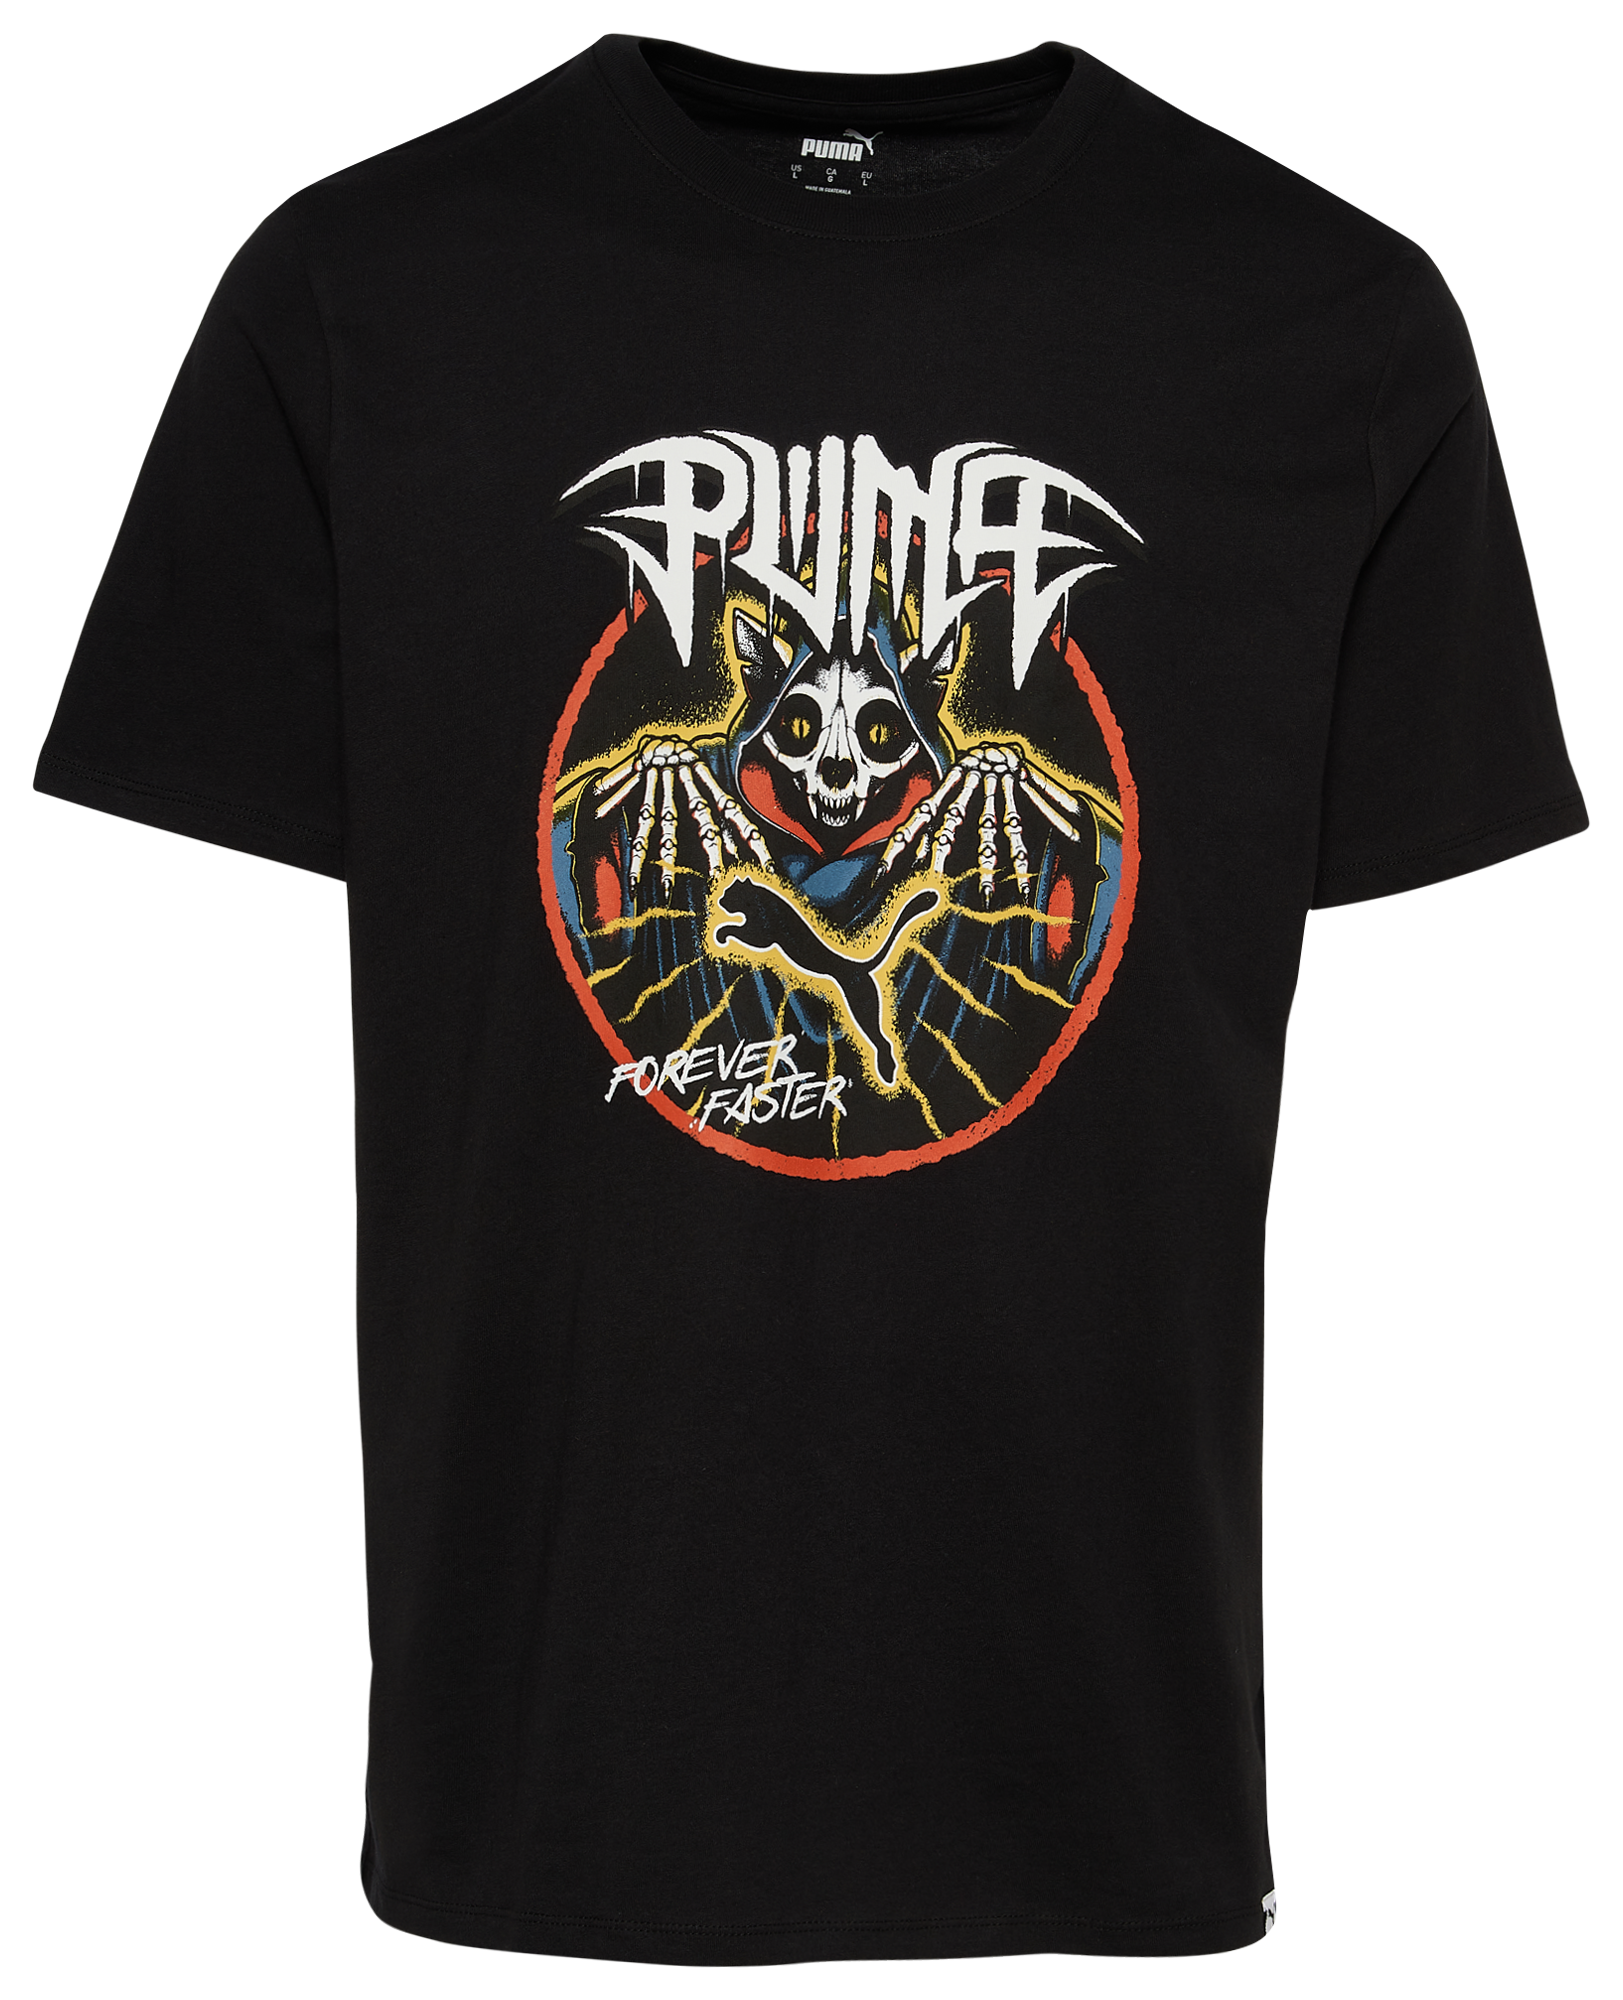 PUMA Vintage Metal T-Shirt